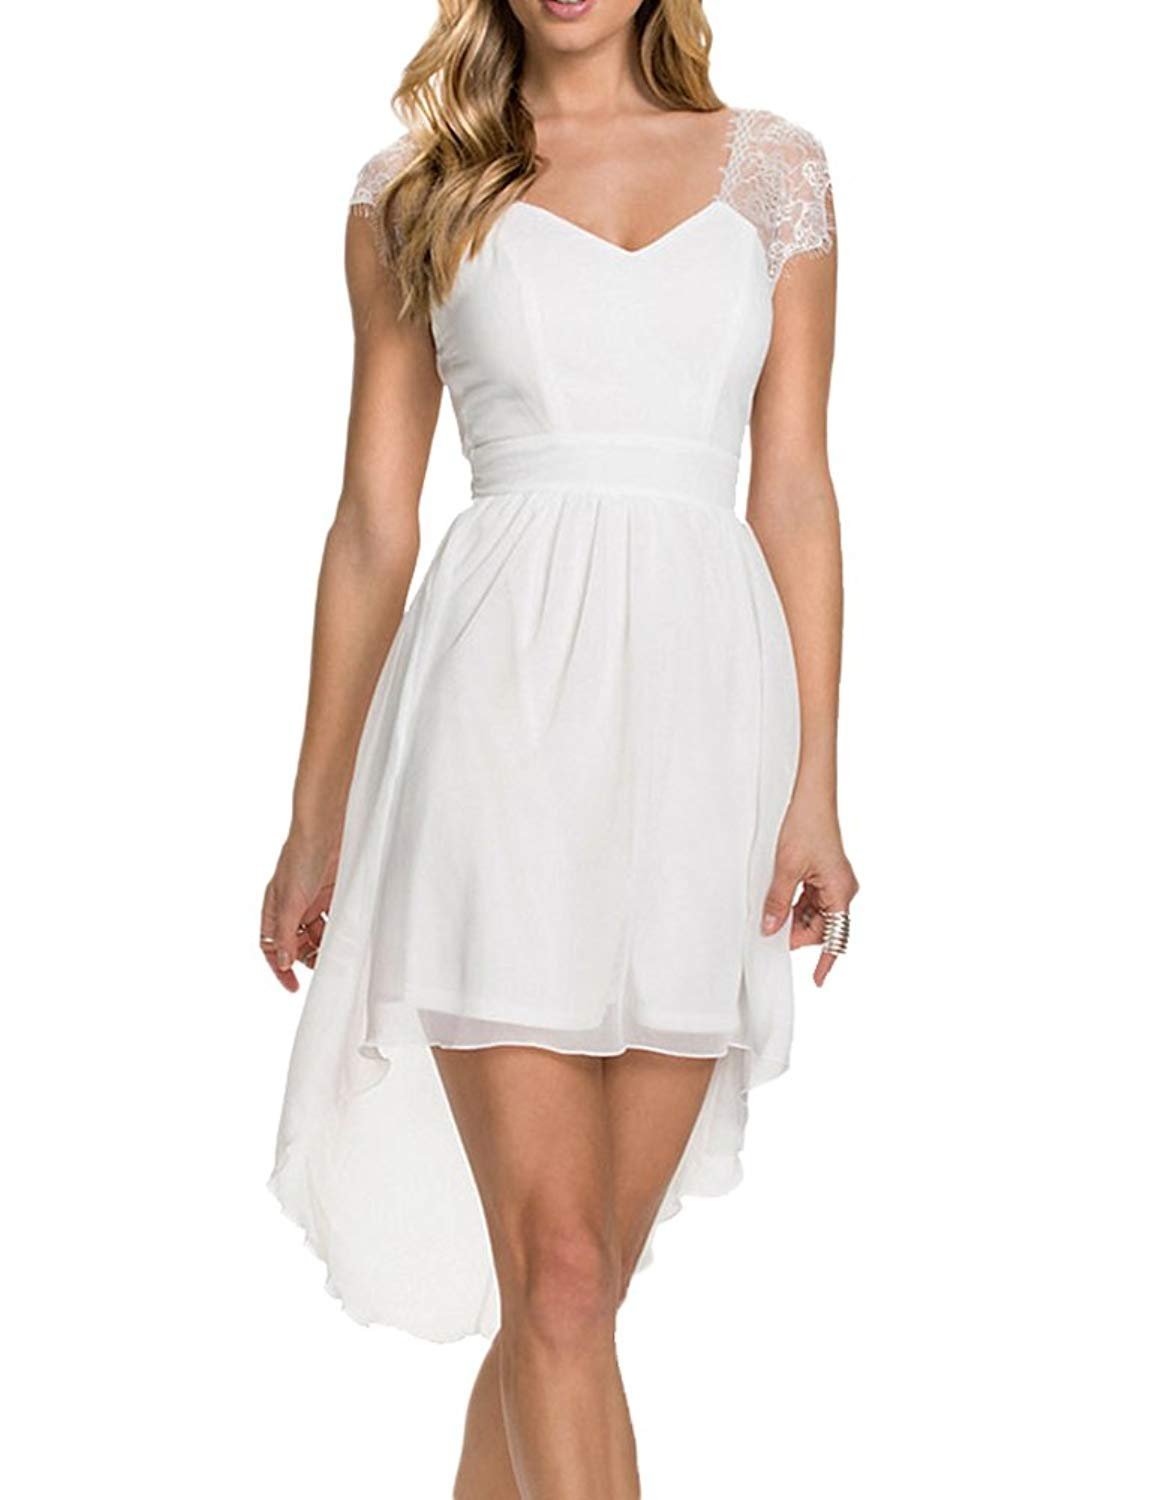 Модель белое платье. Белое платье. Легкие платья. Белое короткое платье. Белый плат.